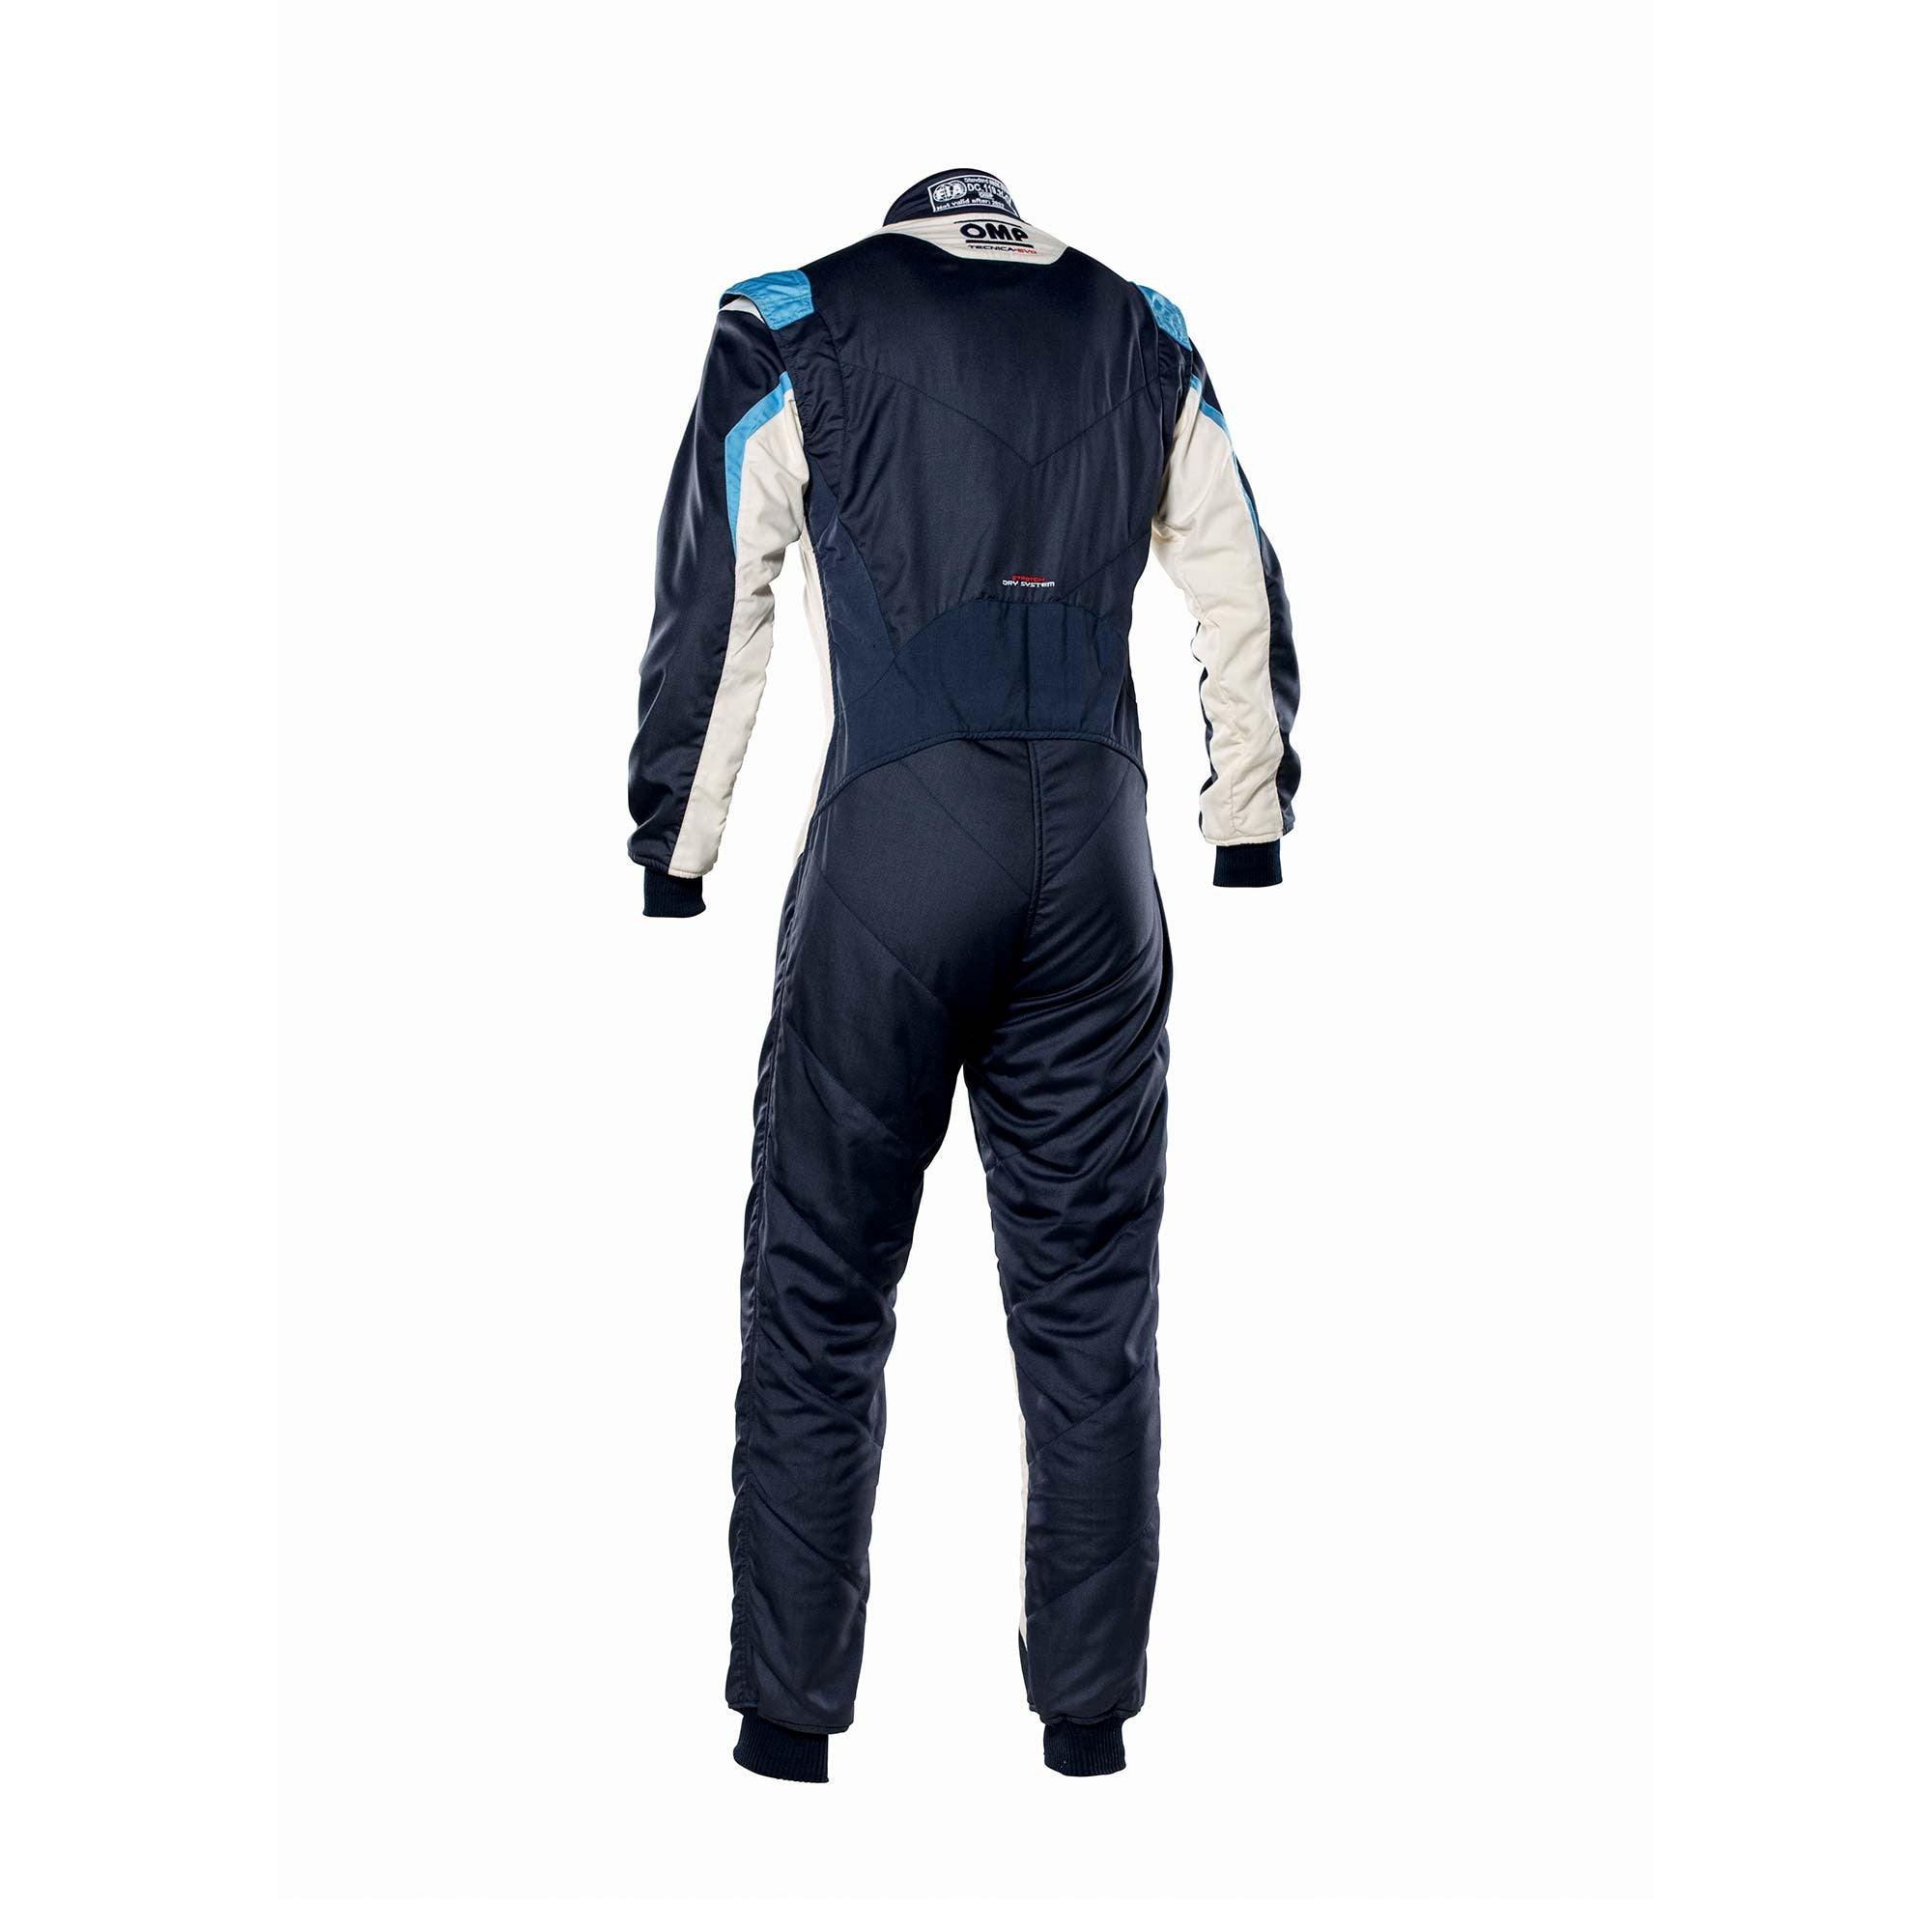 OMP IA0-1859-B01-246-58 Racing suit TECNICA EVO MY2021, FIA 8856-2018, navy blue/white/grey/cyan, size 58 Photo-1 